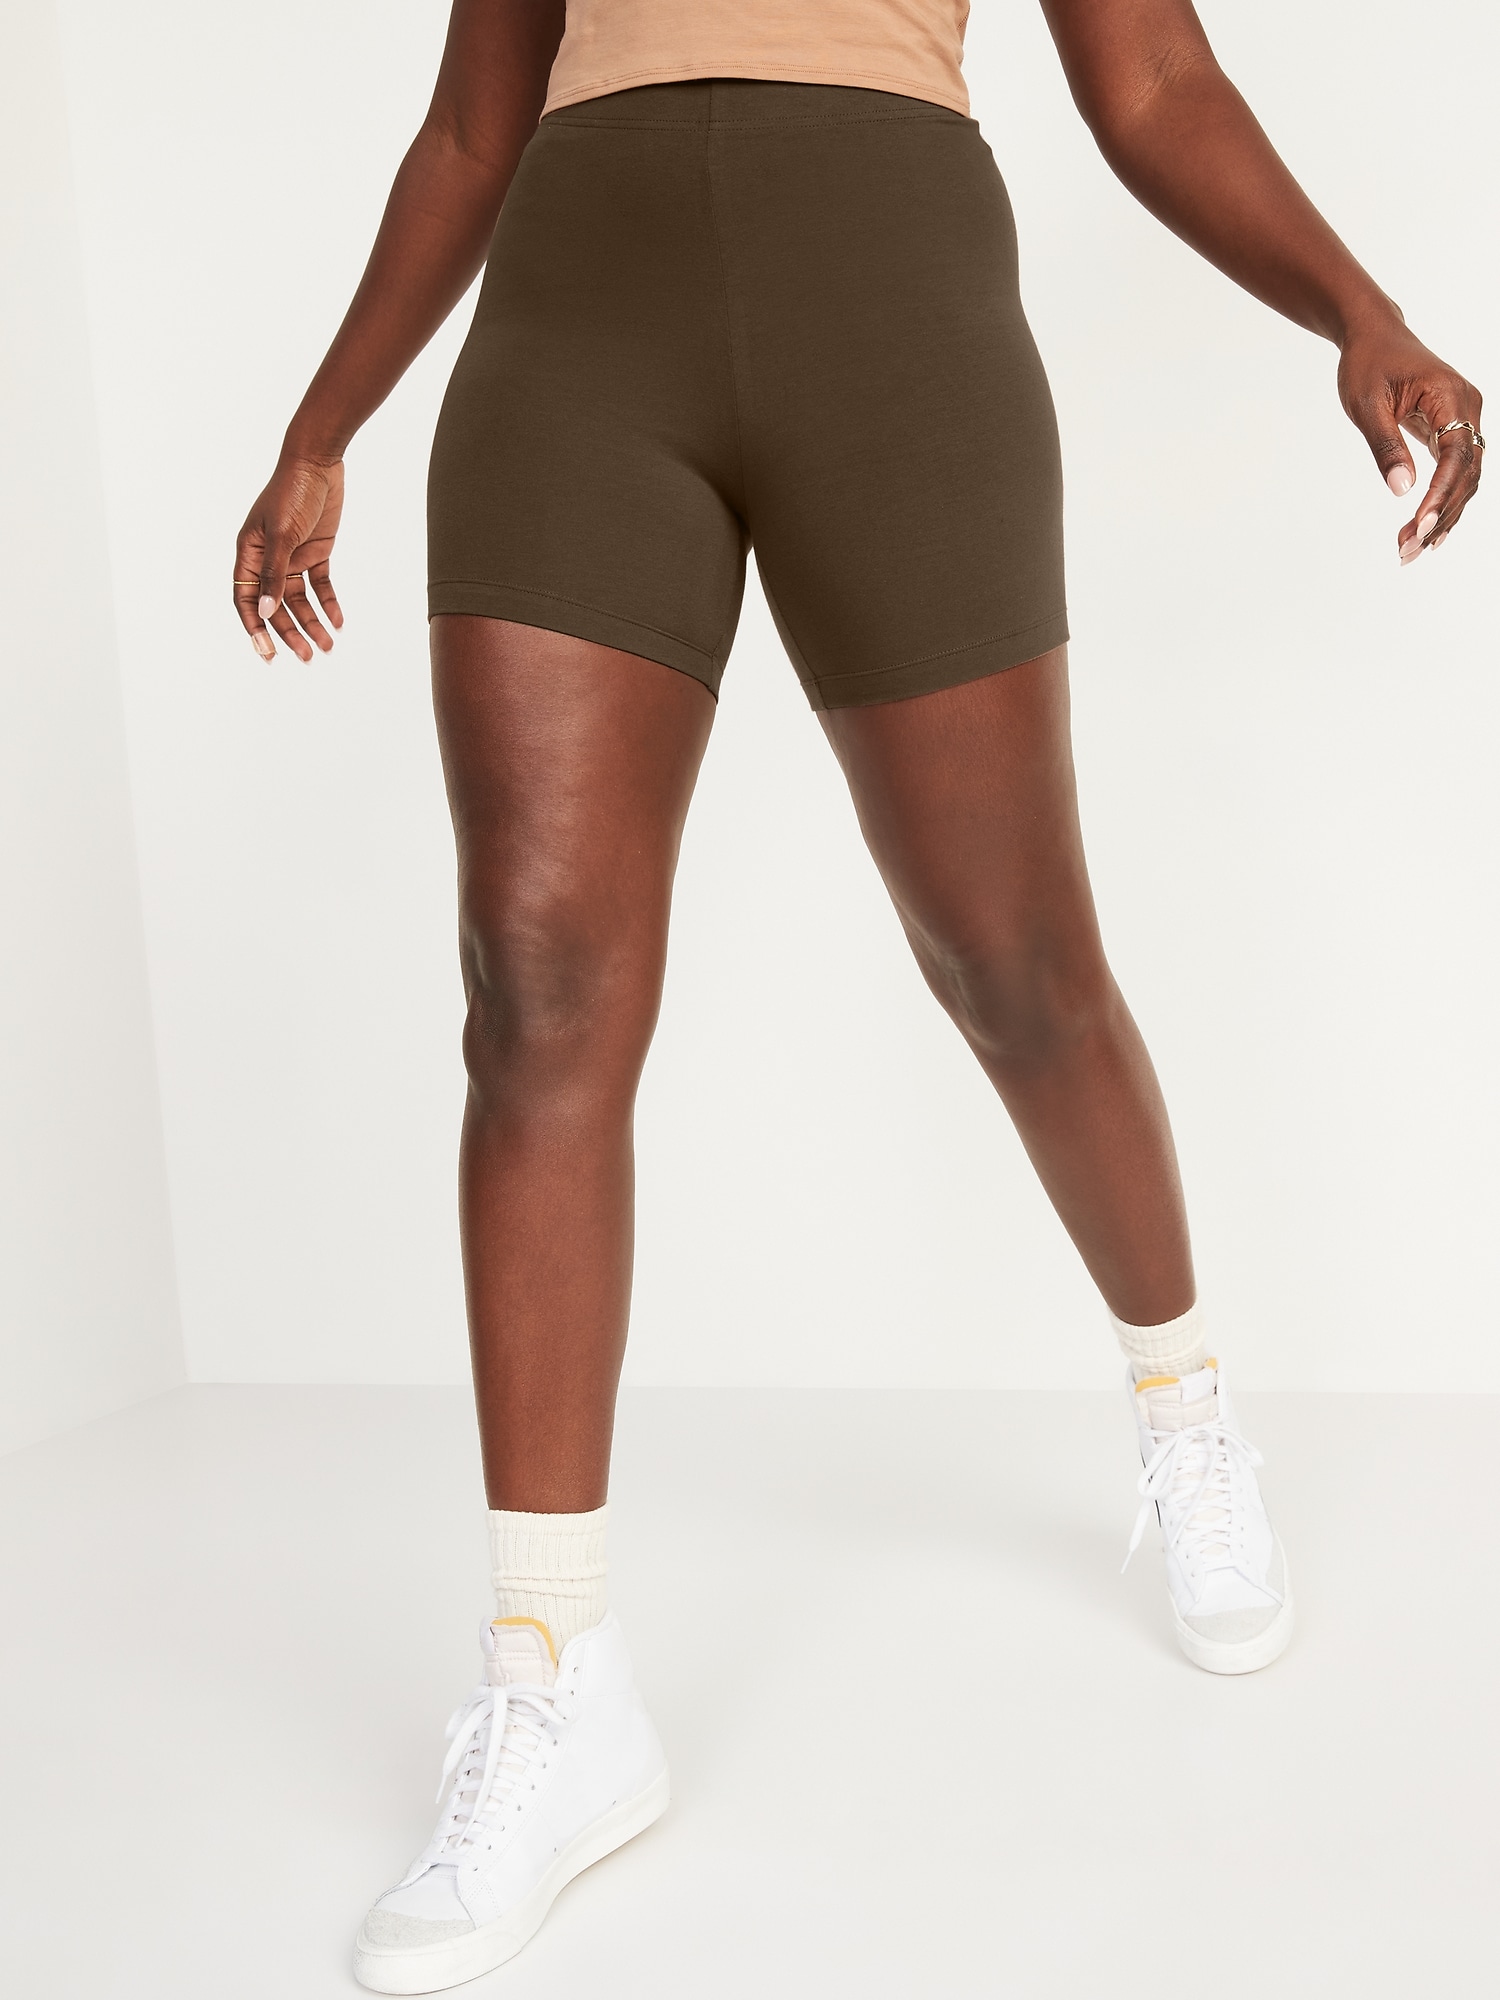 High Waisted Jersey Biker Shorts for Women -- 6-inch inseam Hot Deal